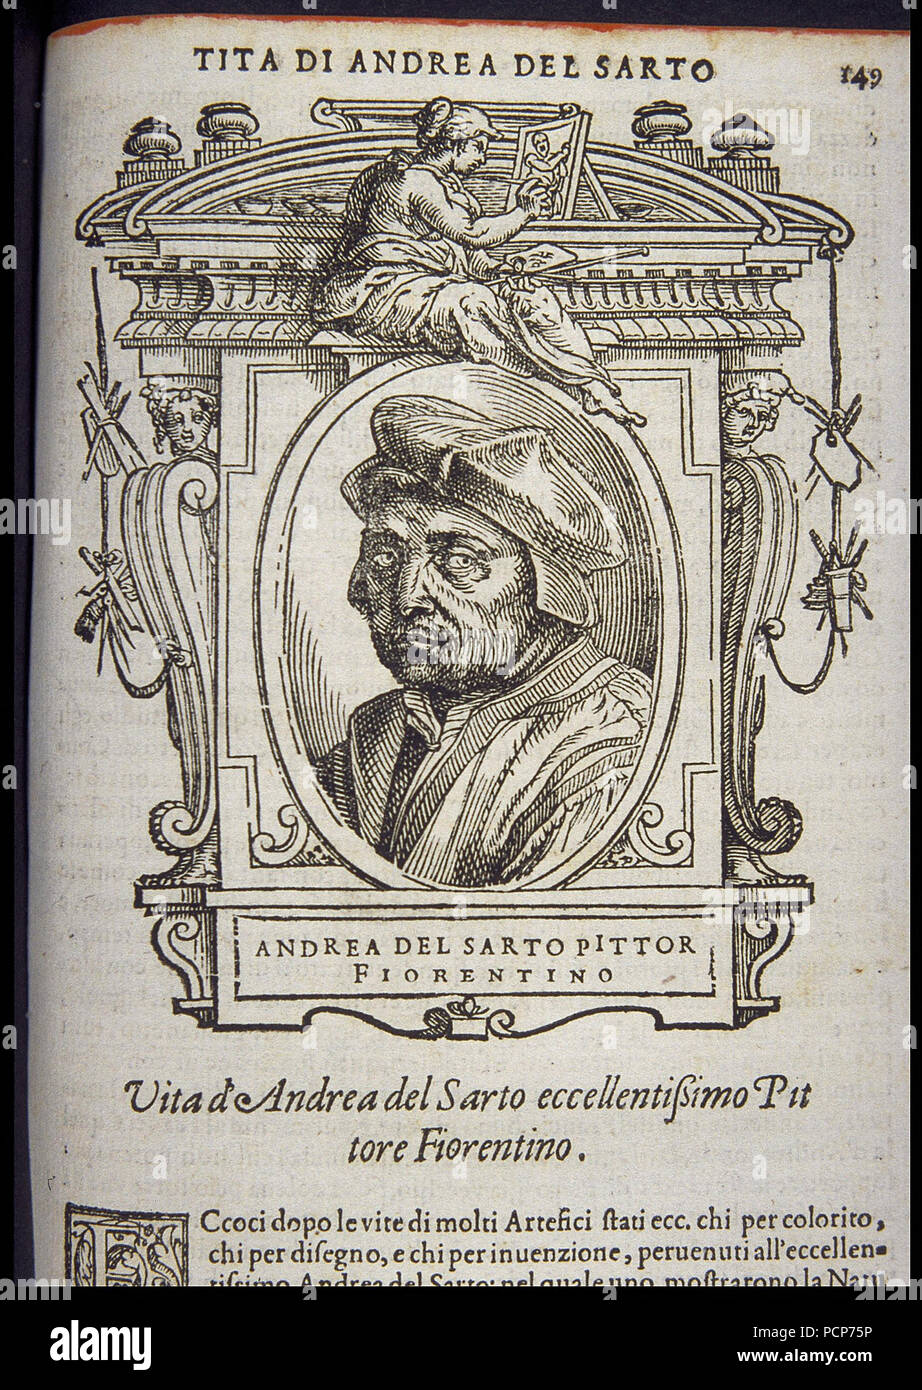 Andrea del Sarto, ca 1568. Stock Photo